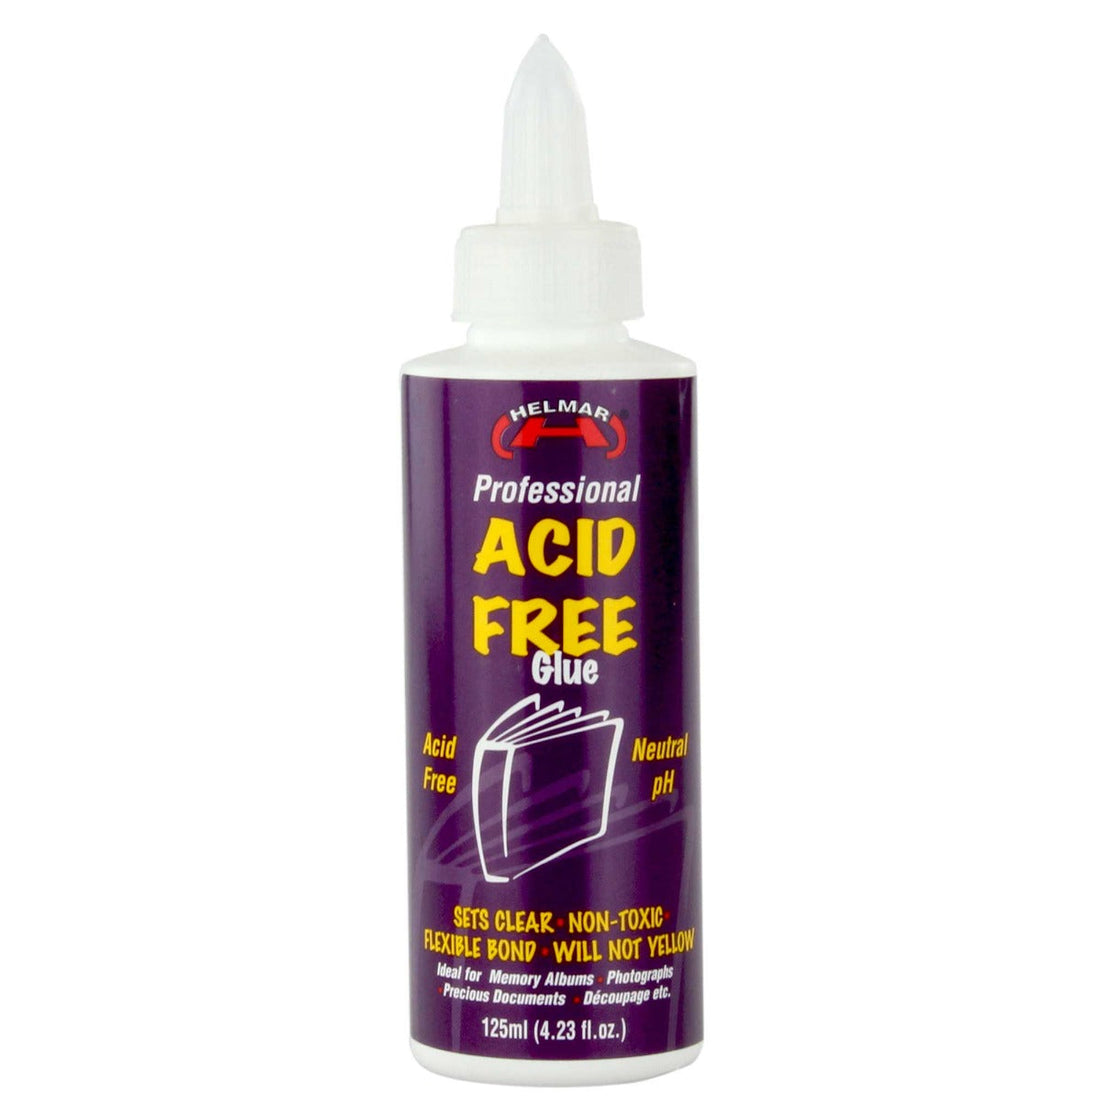 helmar acid free glue